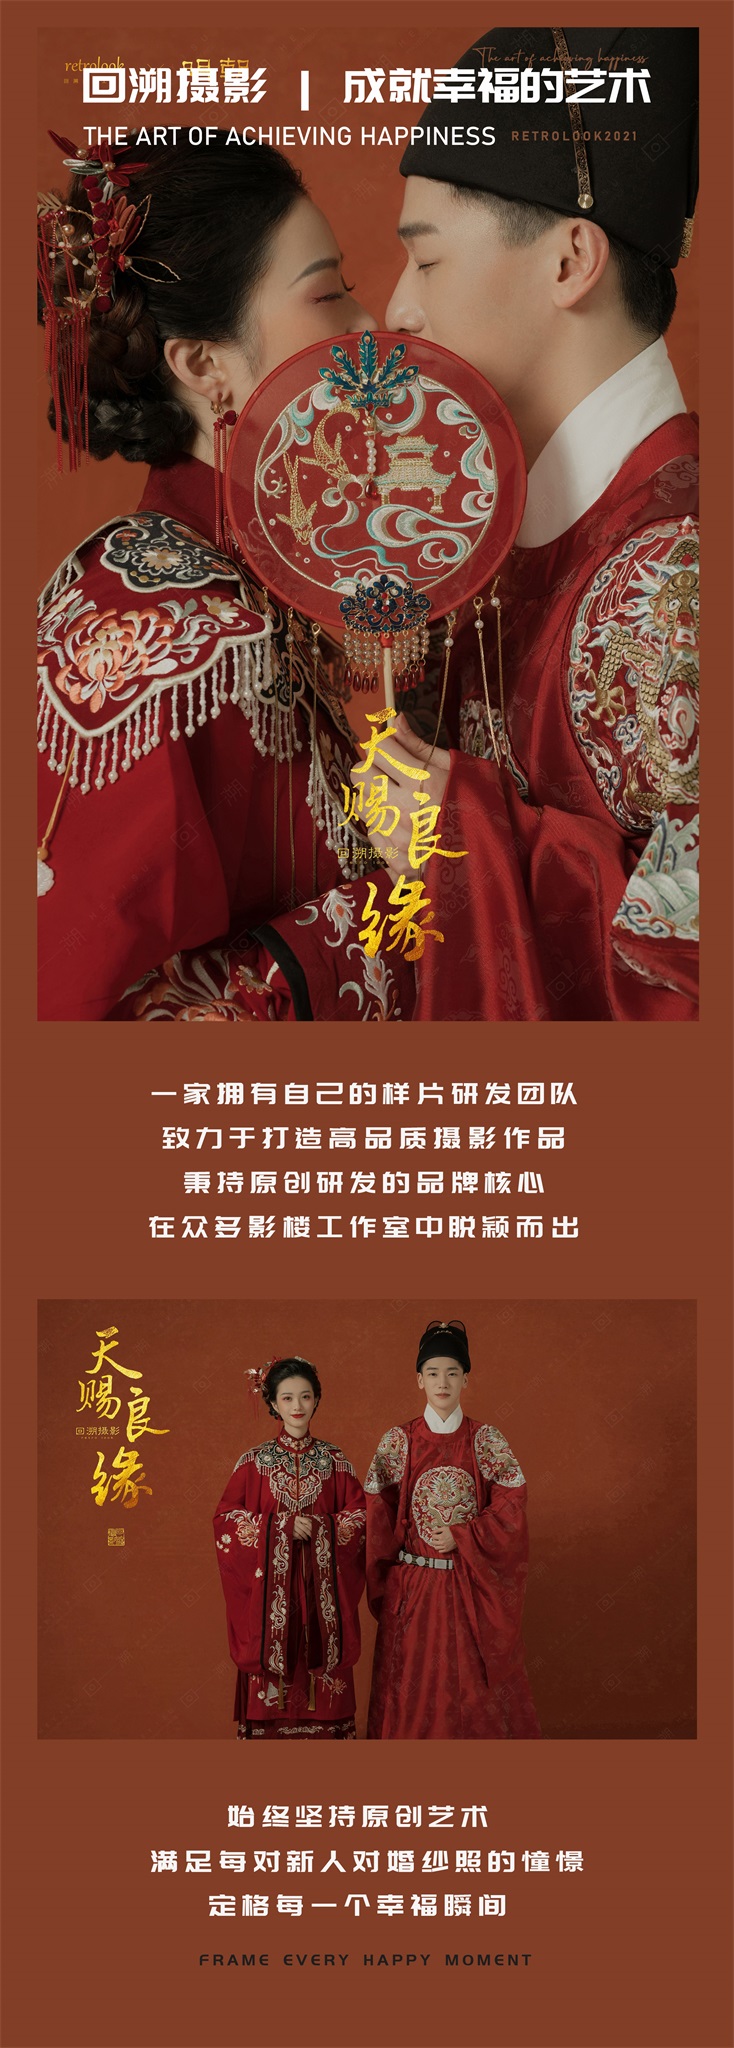 【新中式婚纱照】国潮龙凤褂+秀和服旗袍+底片全送